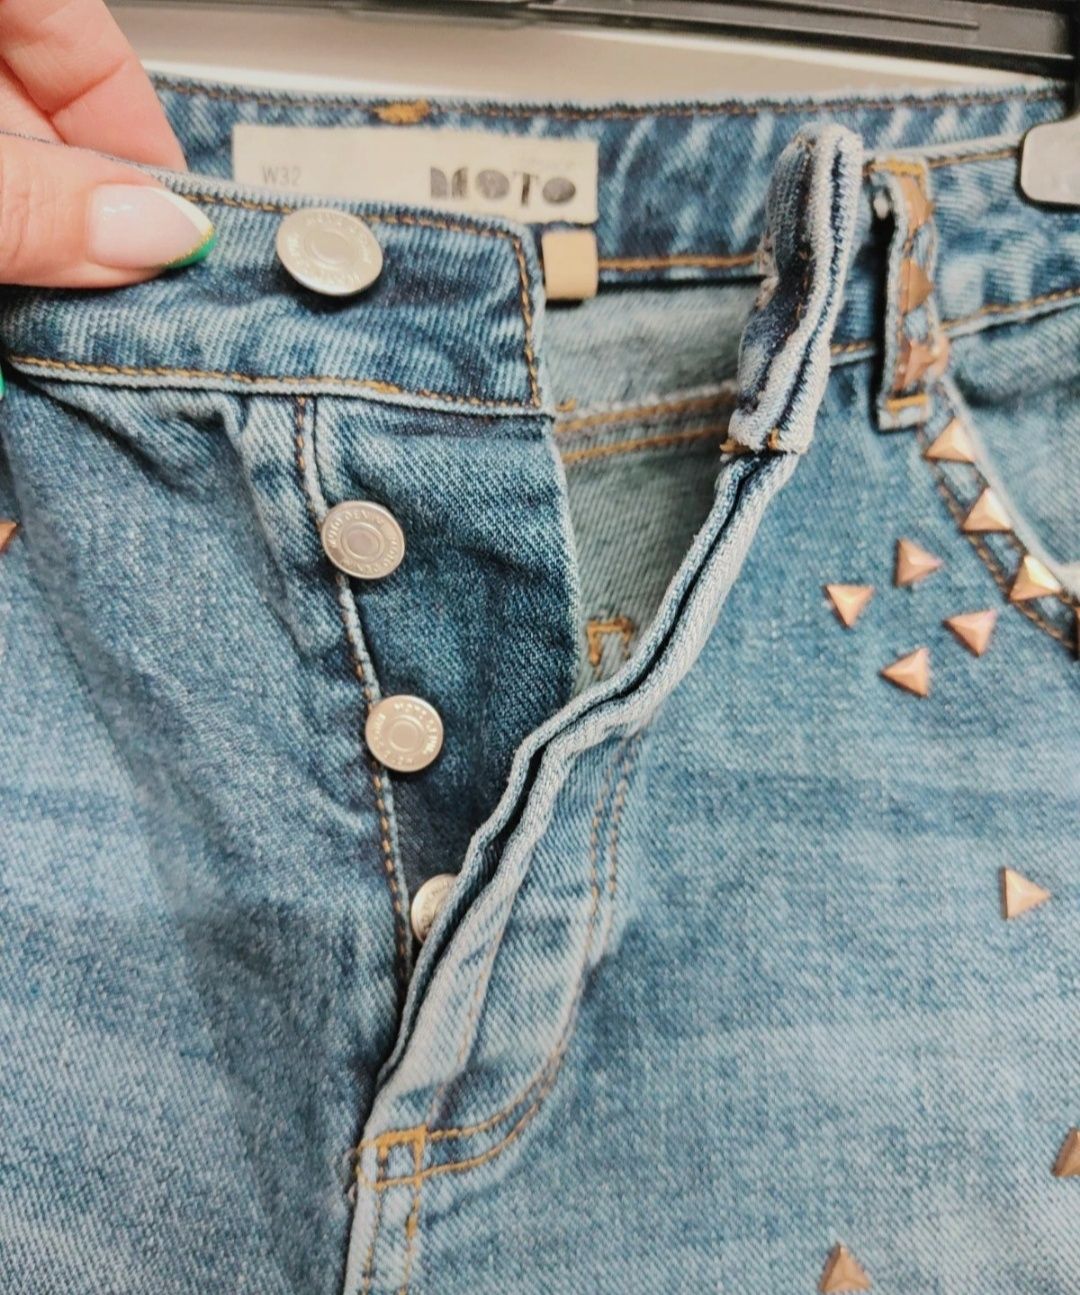 Jeansowe dżinsowe szorty krótkie spodenki z dżetami guziki rozmiar 32